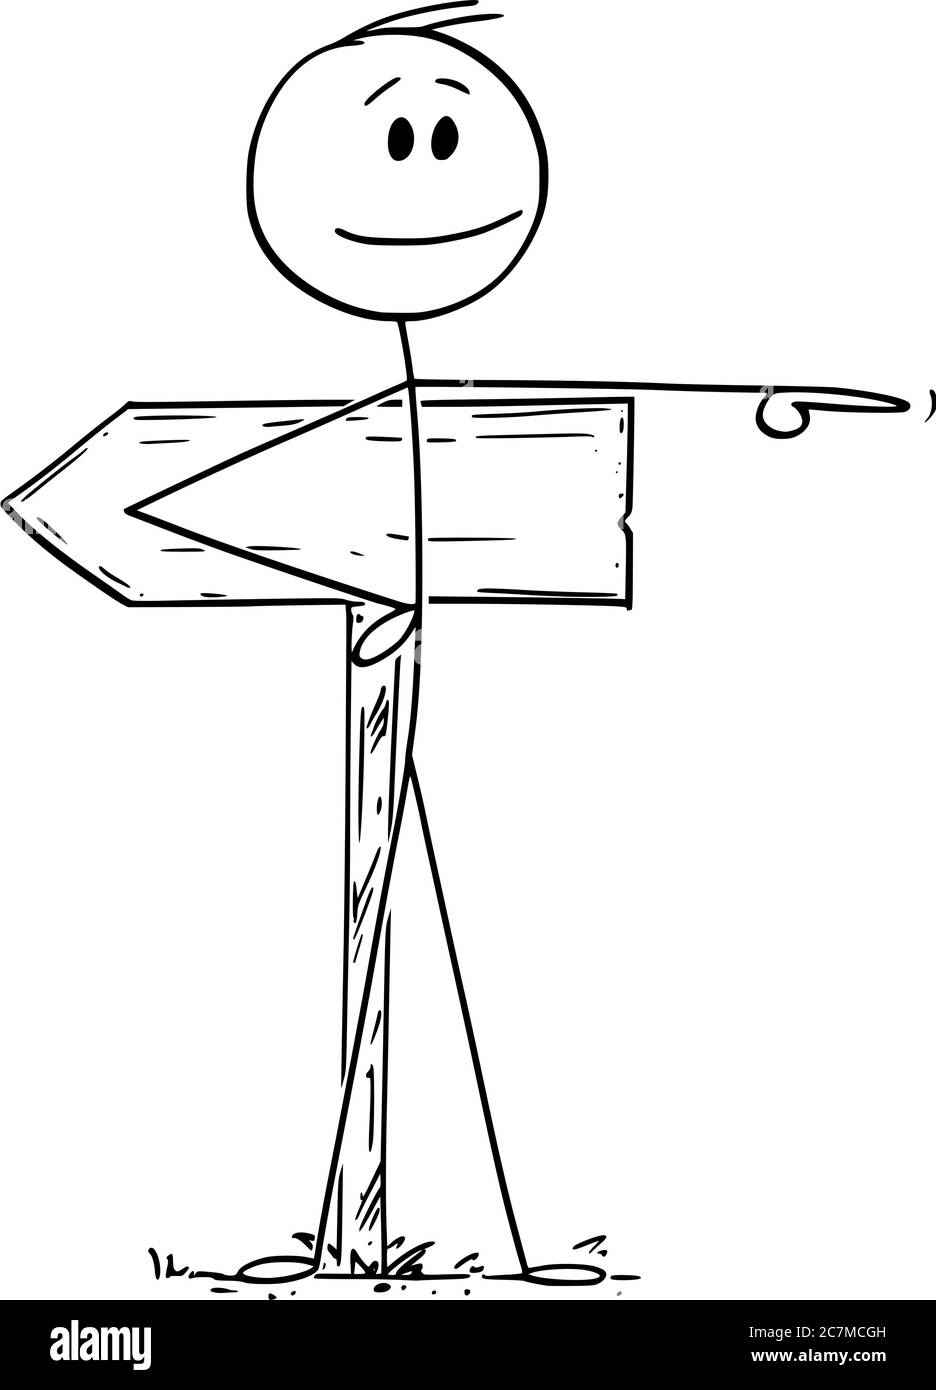 Vektor Cartoon Stick Figur Zeichnung konzeptionelle Illustration des Menschen oder Geschäftsmann zeigt in entgegengesetzte Richtung als Straßenschild. Anders Weg, Entscheidung, Individualität Konzept. Stock Vektor